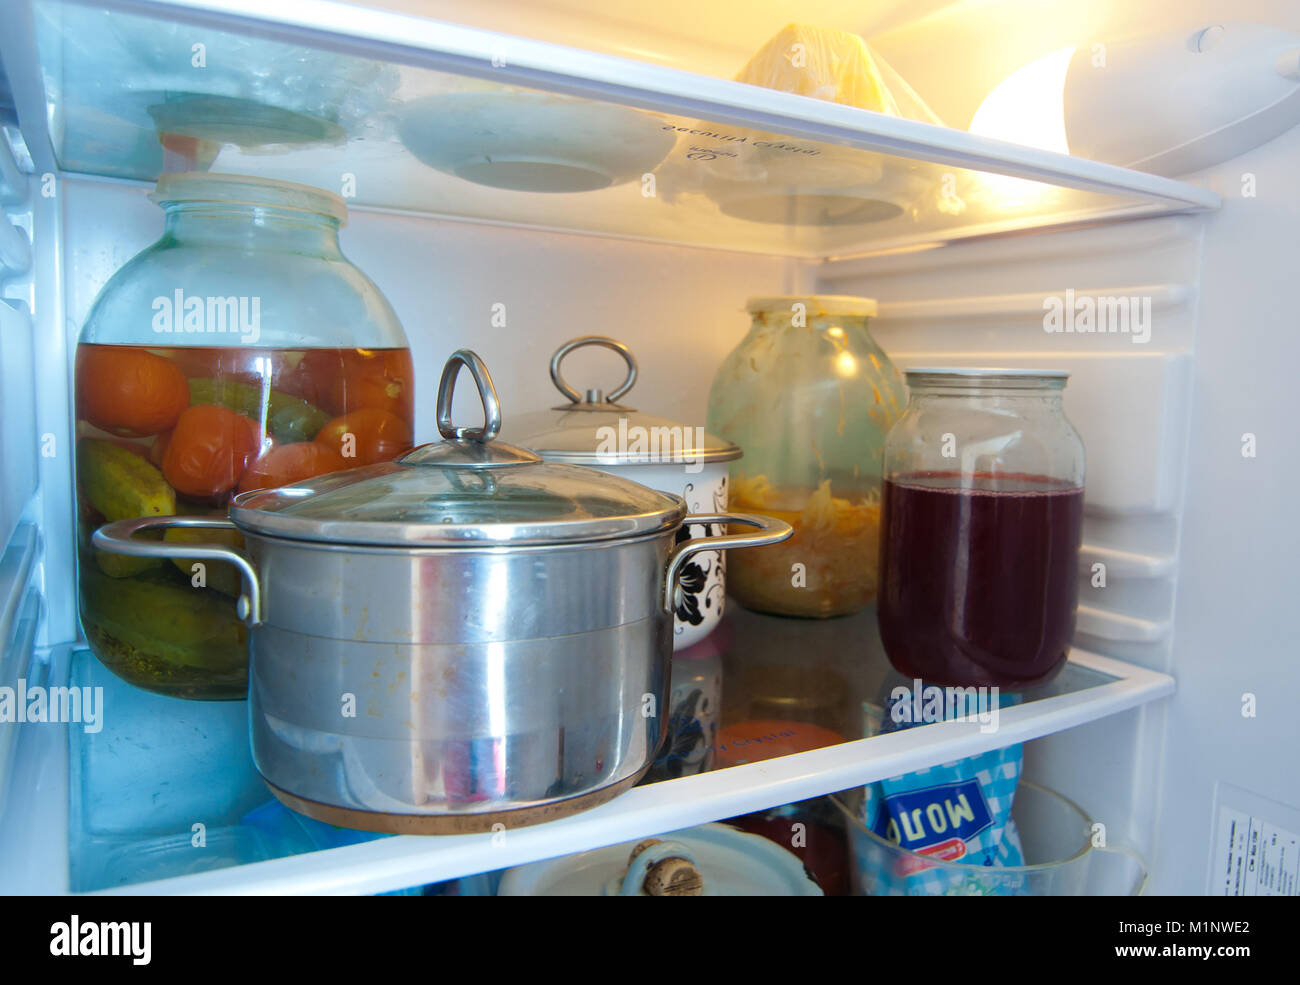 Можно ли ставить суп в холодильник. Кастрюля в холодильнике. Холодильники с едой и кастрюлями. Кастрюля с едой. Хранение в холодильнике с кастрюли.